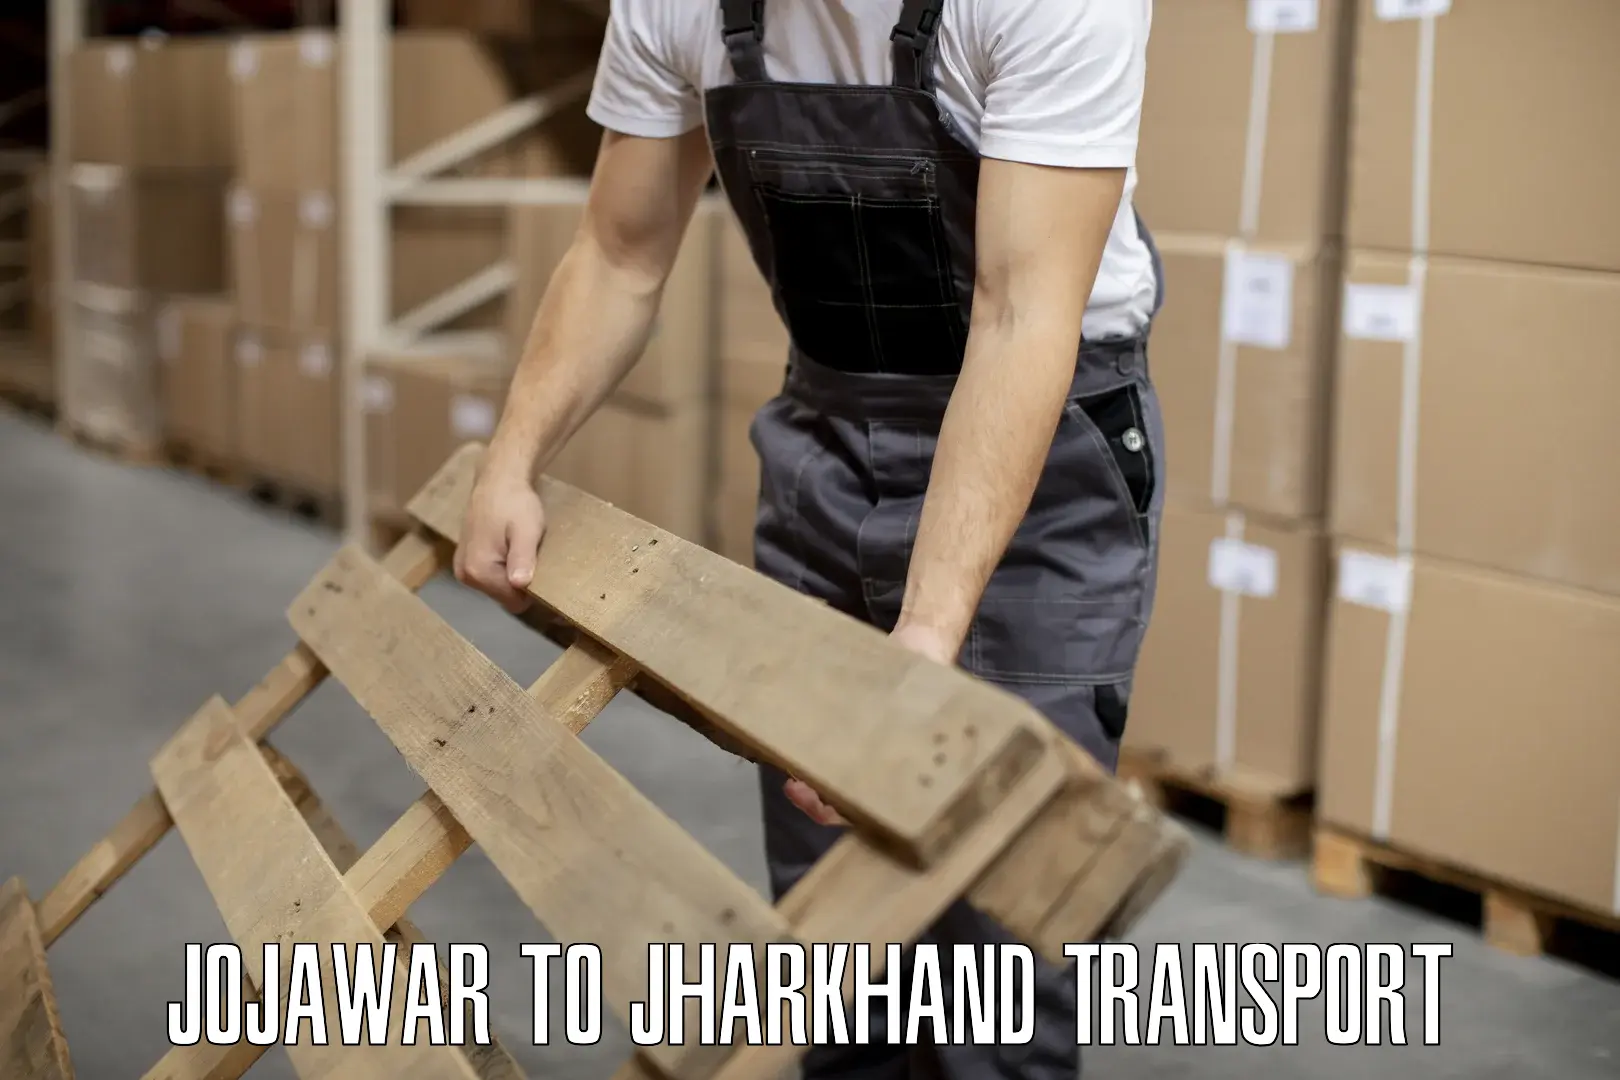 Two wheeler parcel service Jojawar to Barwadih